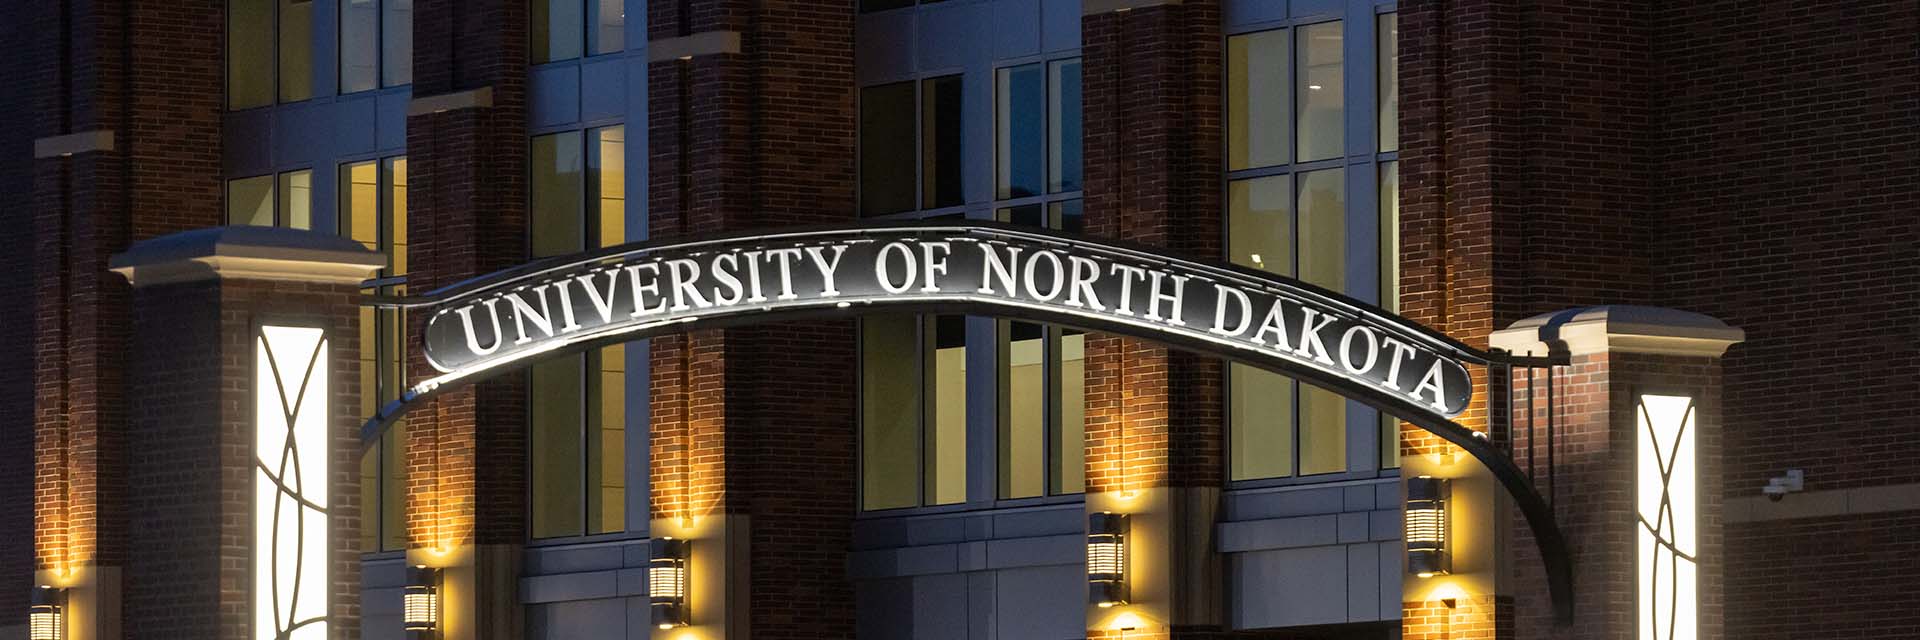 und campus sign lit up at night